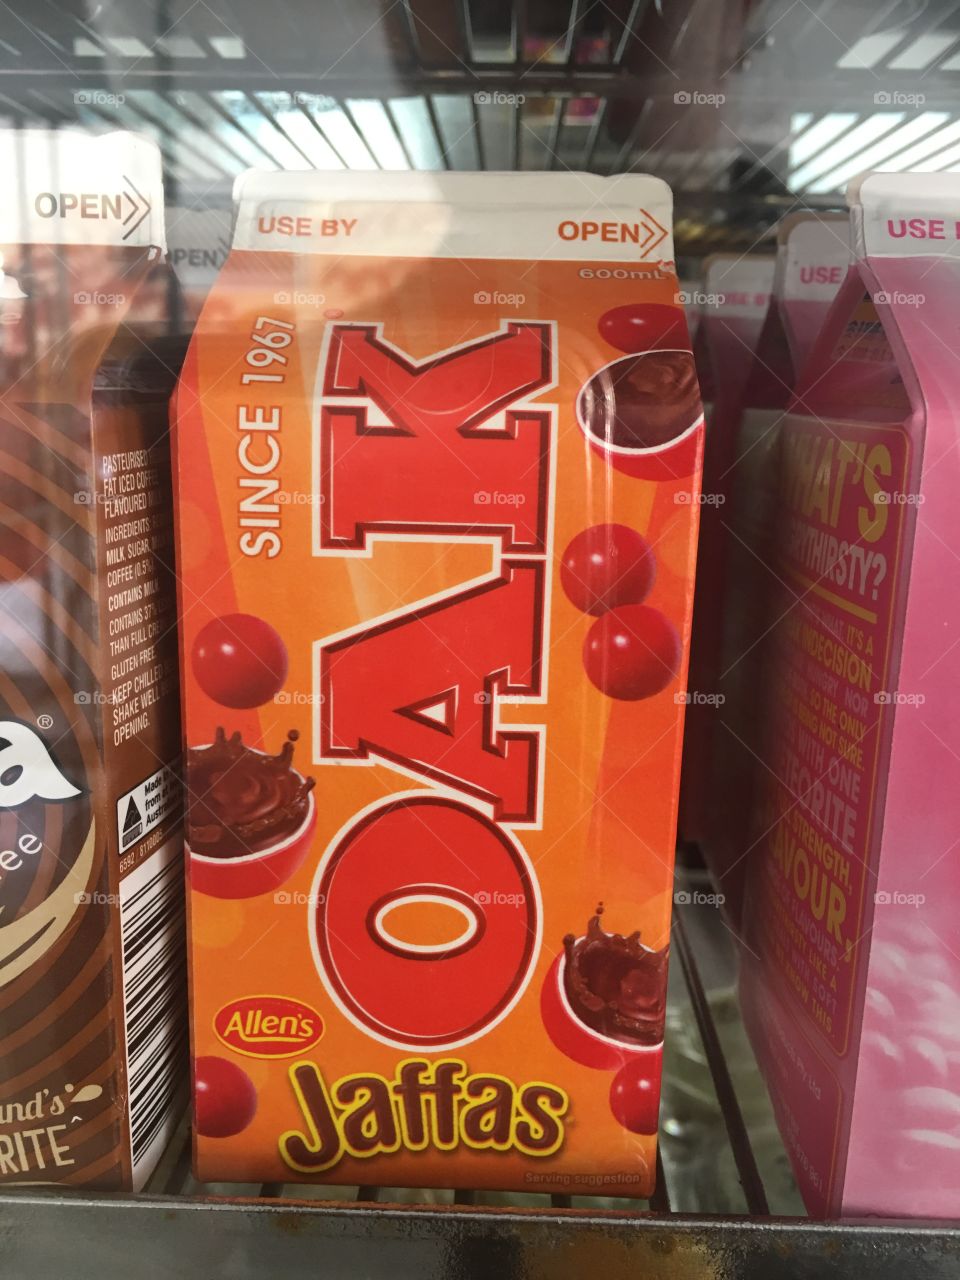 Allen’s Jaffas flavoured Oak milk since 1967 (c)